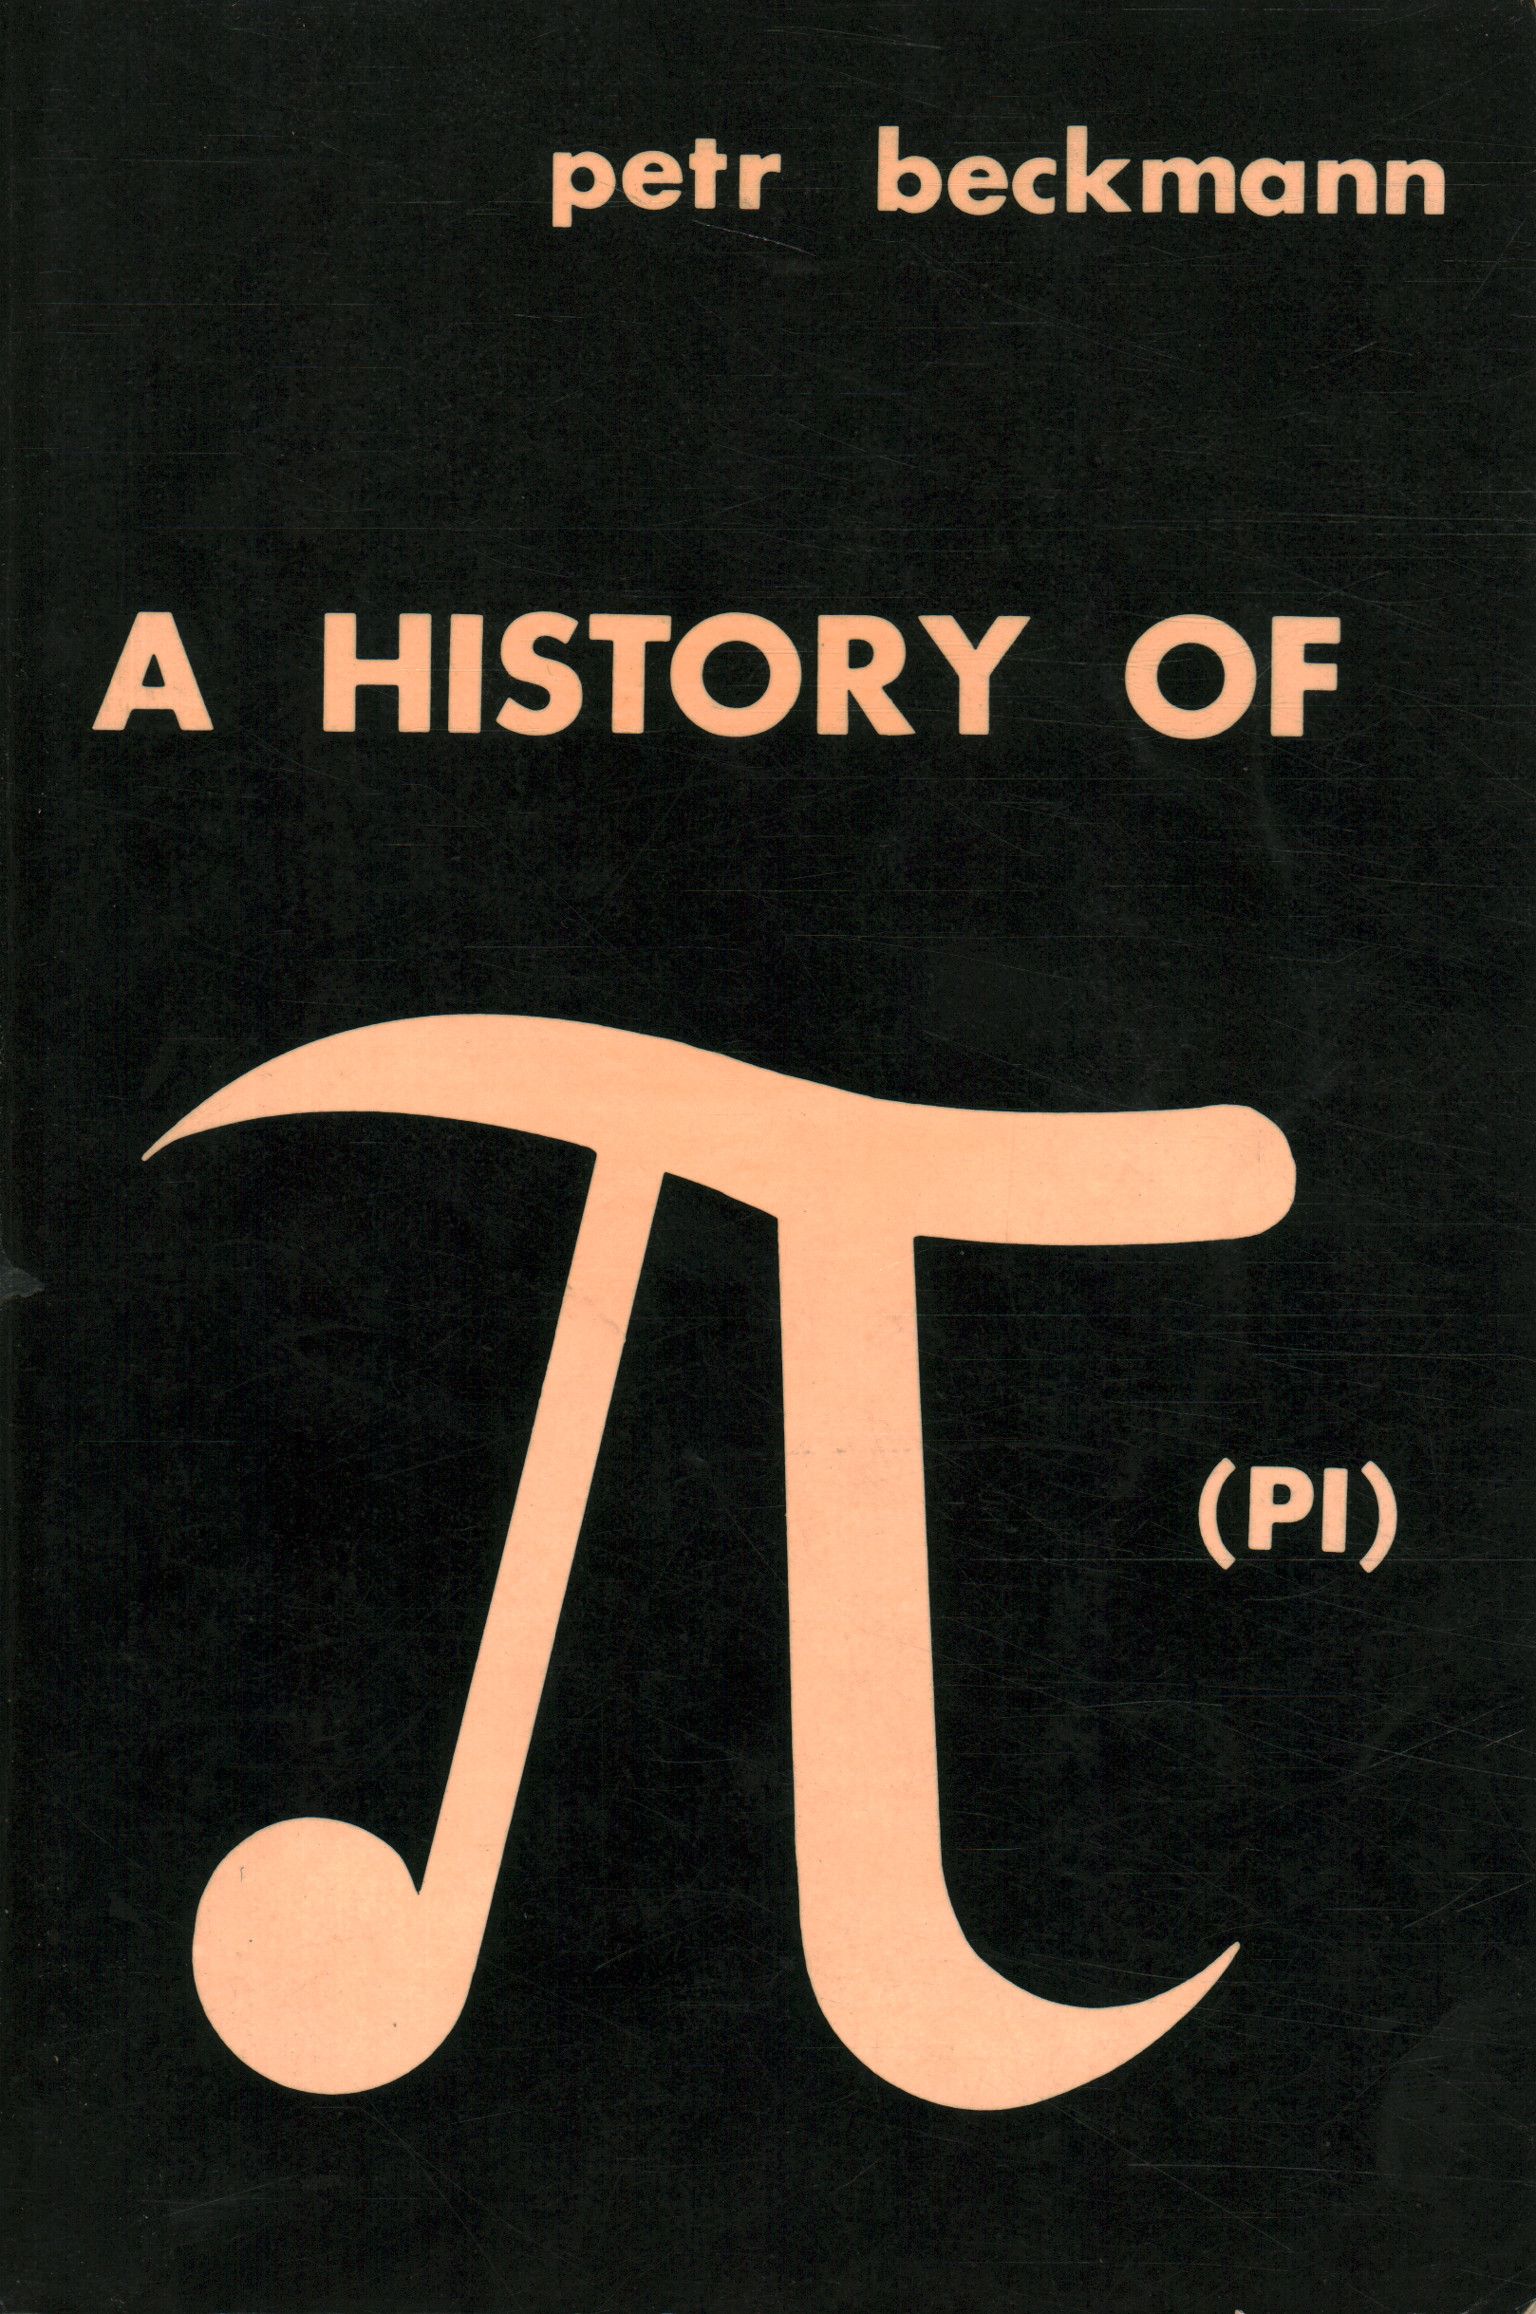 Die Geschichte von Pi